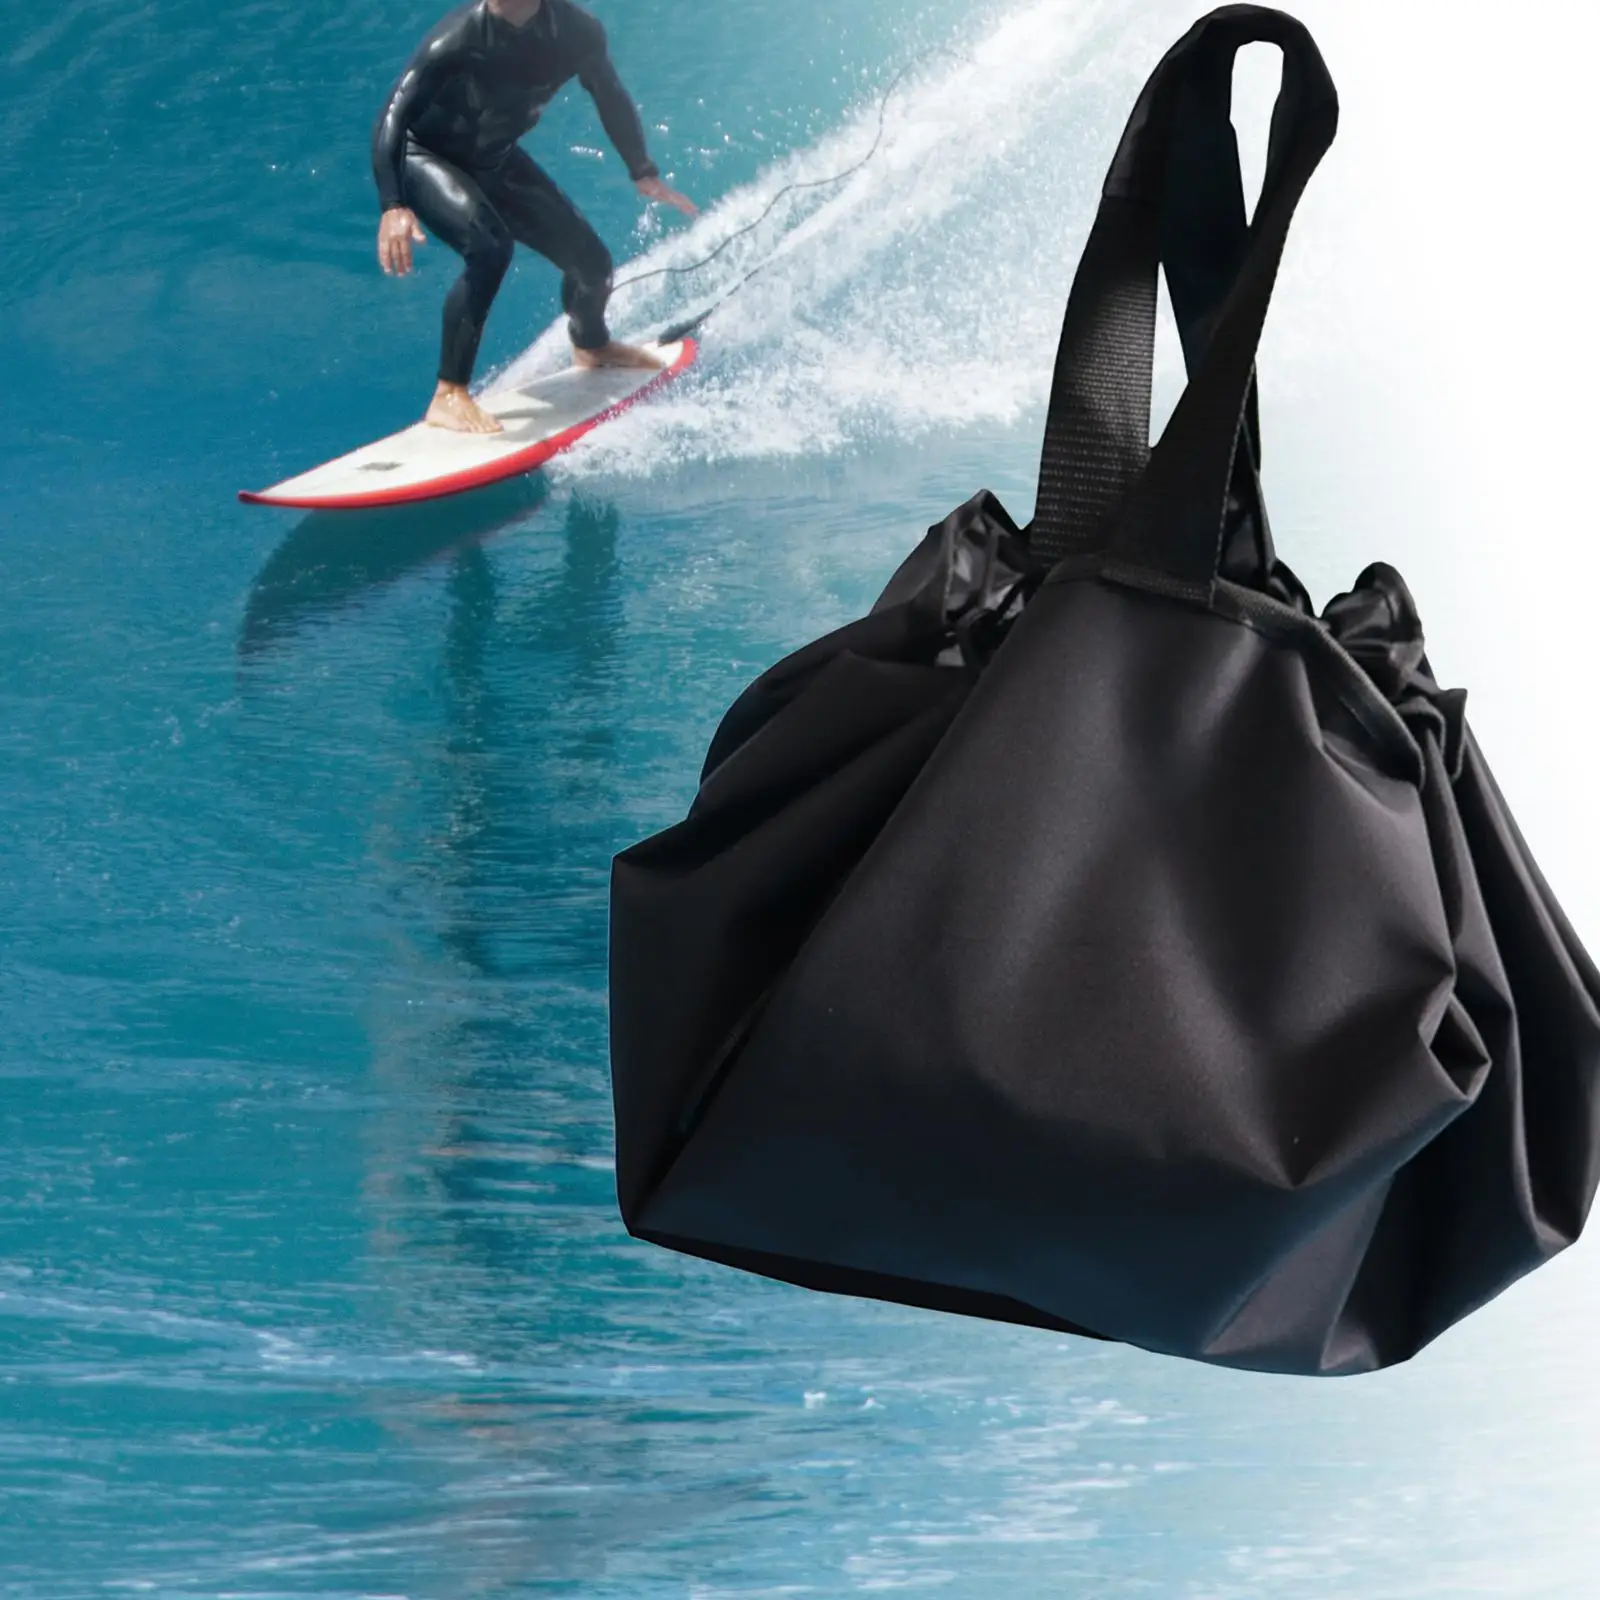 Diving Suit Wetsuit Storage Bag Mat Bag Changing Mat Waterproof Wetsuit Changing Mat for Surfing Suit Surfing Accessories